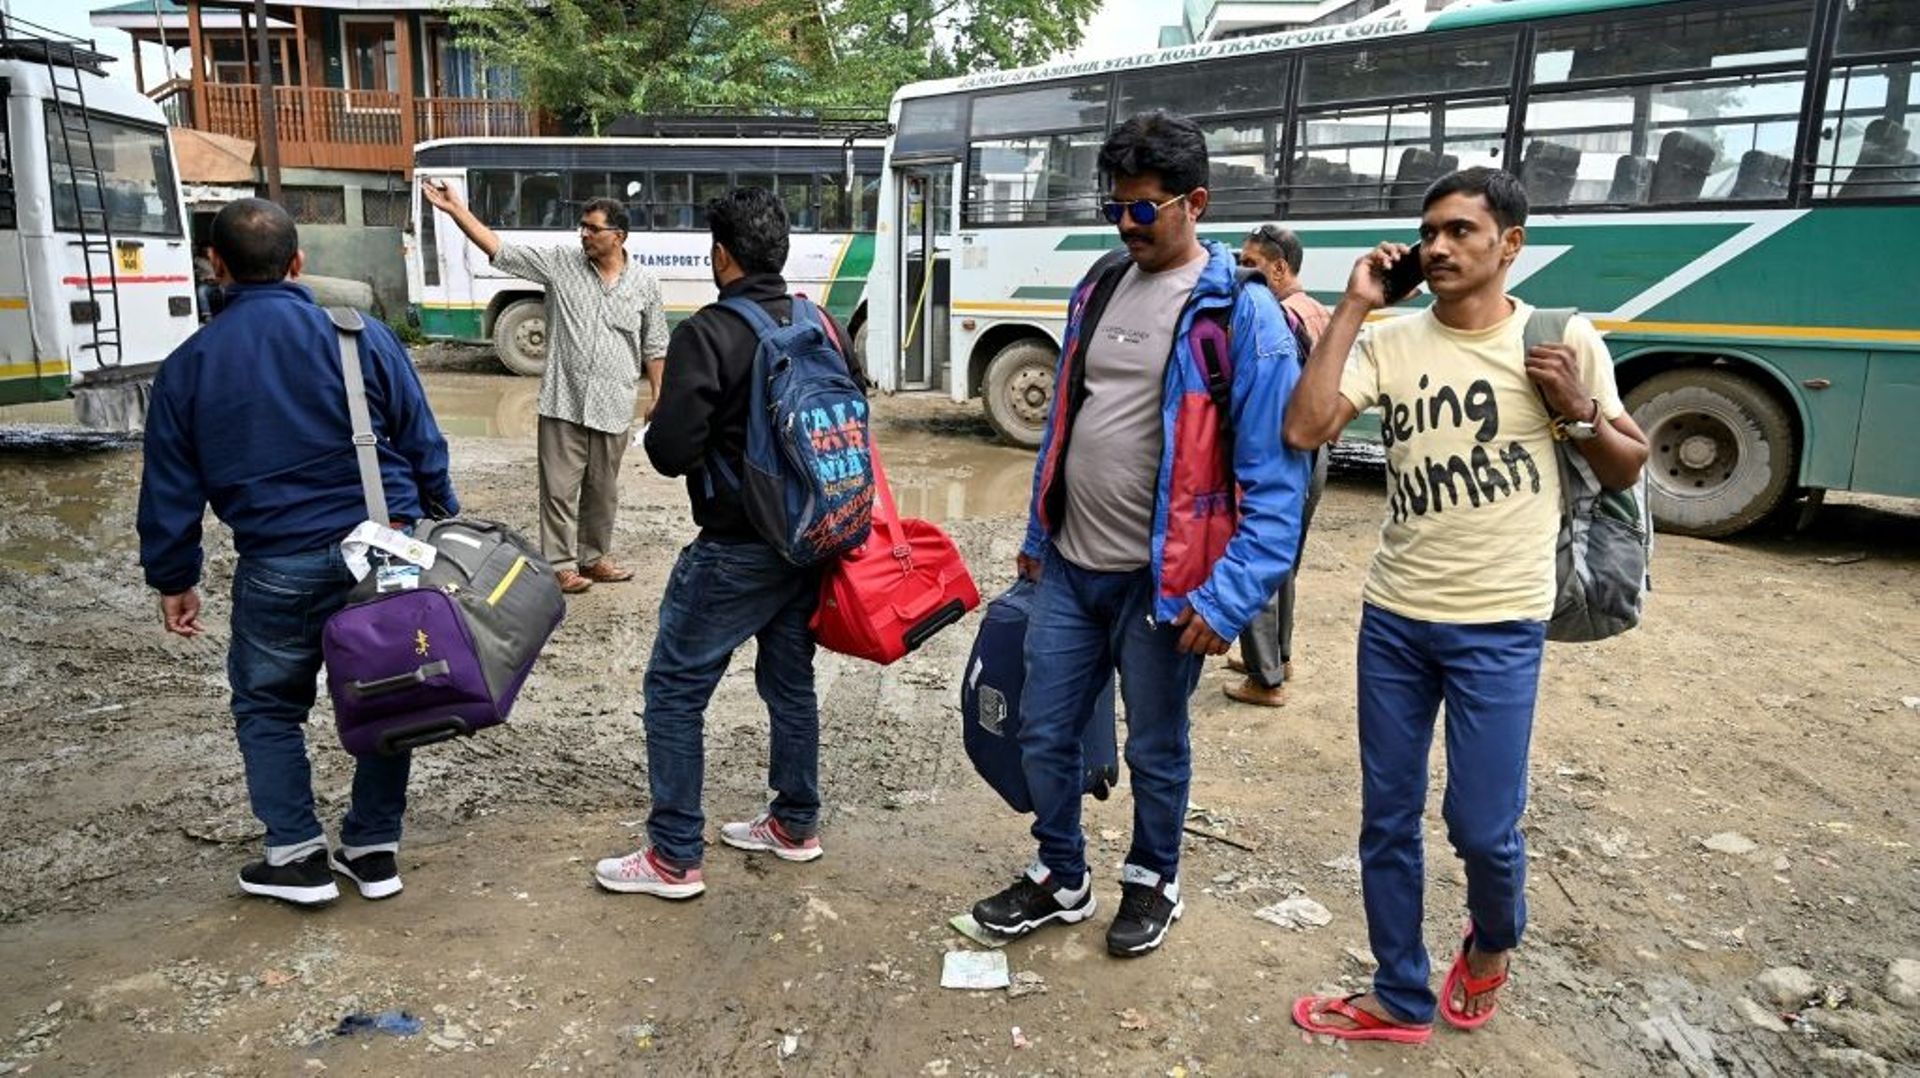 Des touristes s'apprêtent à prendre le bus pour quitter le Cachemire, le 3 août 2019 à Srinagar